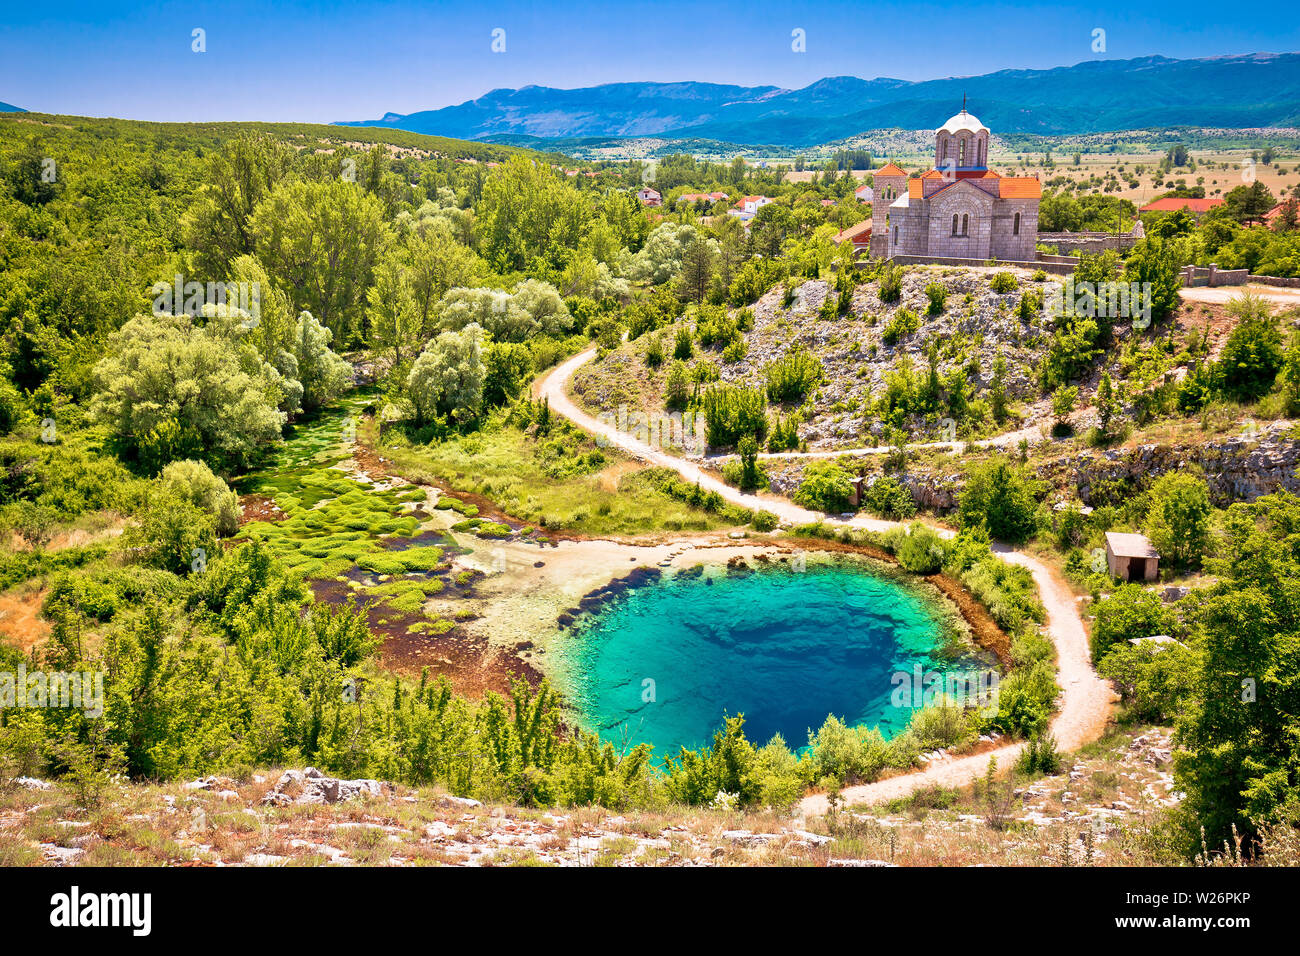 Der Fluss Cetina Quelle Wasser Loch und die Orthodoxe Kirche Luftaufnahme, dalmatinischen Zagora Region von Kroatien Stockfoto